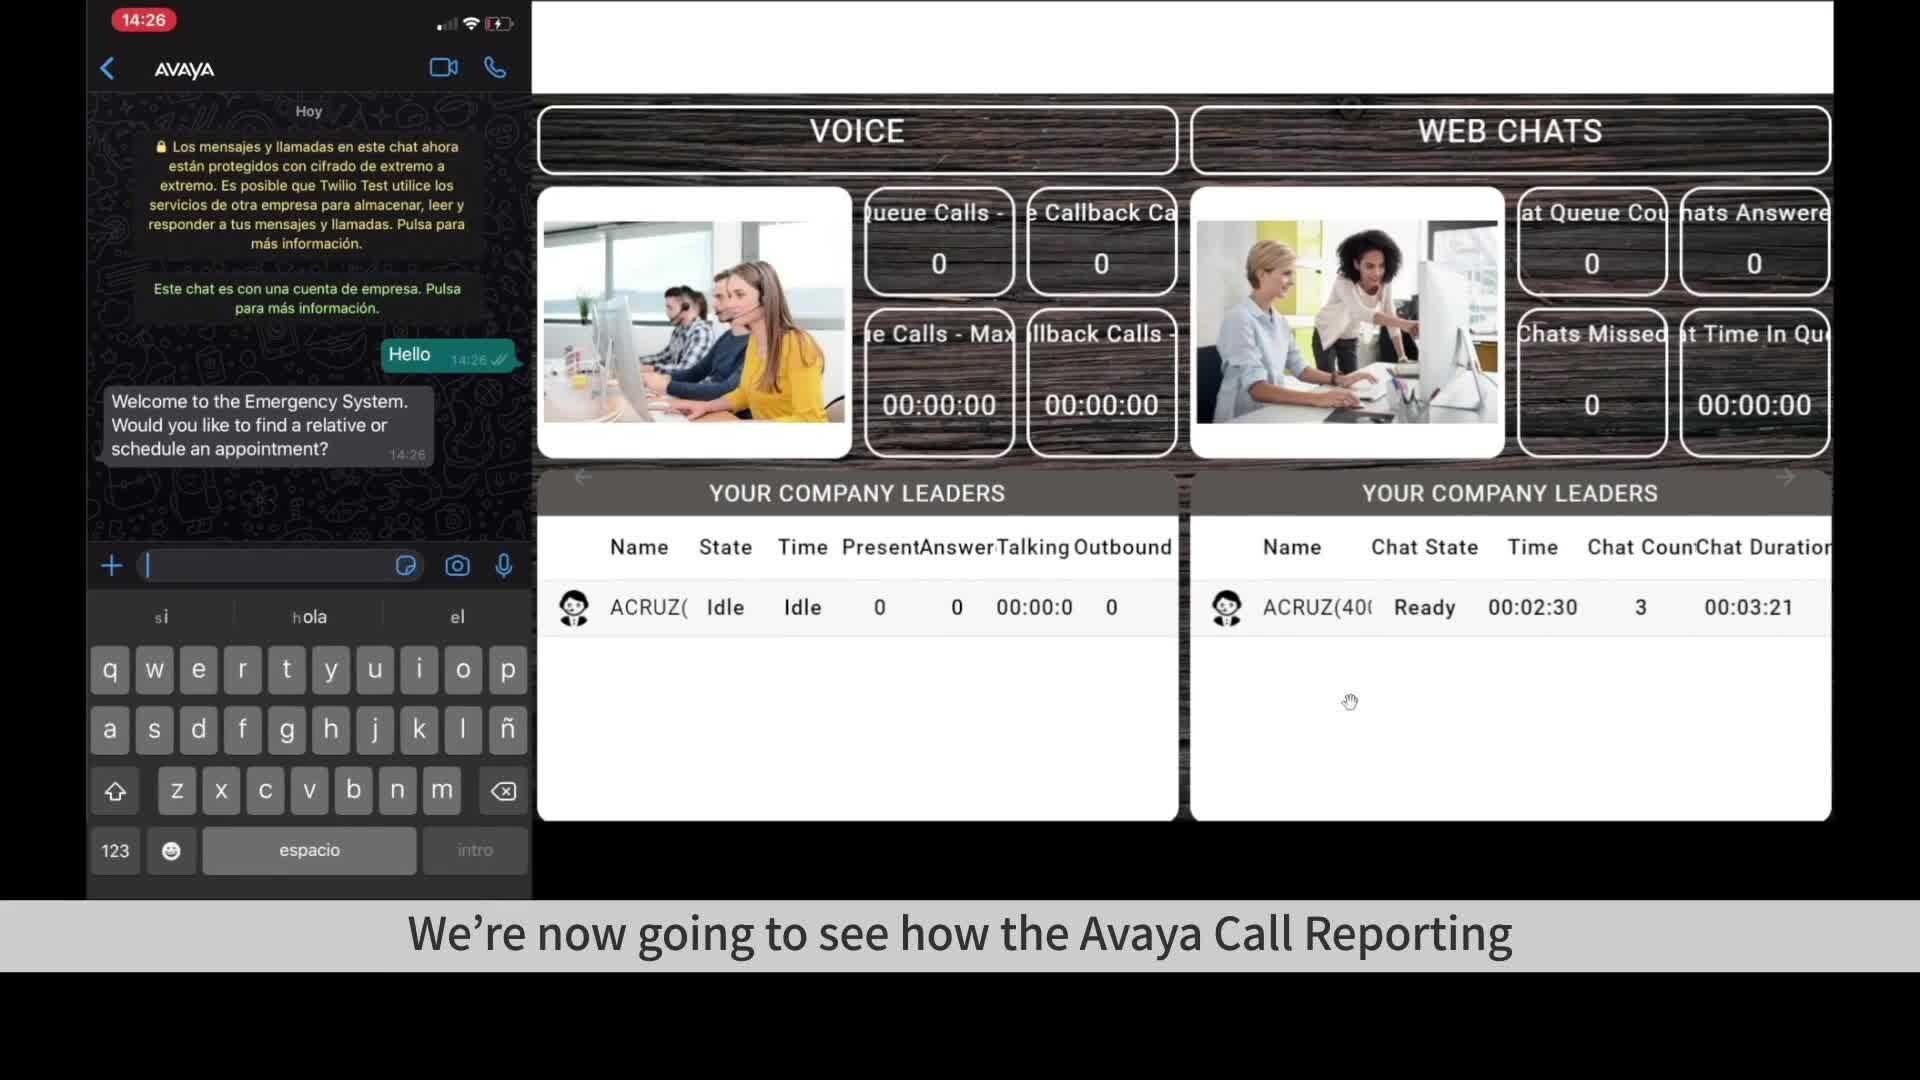 Avaya Call Reporting: Conversation on WhatsApp